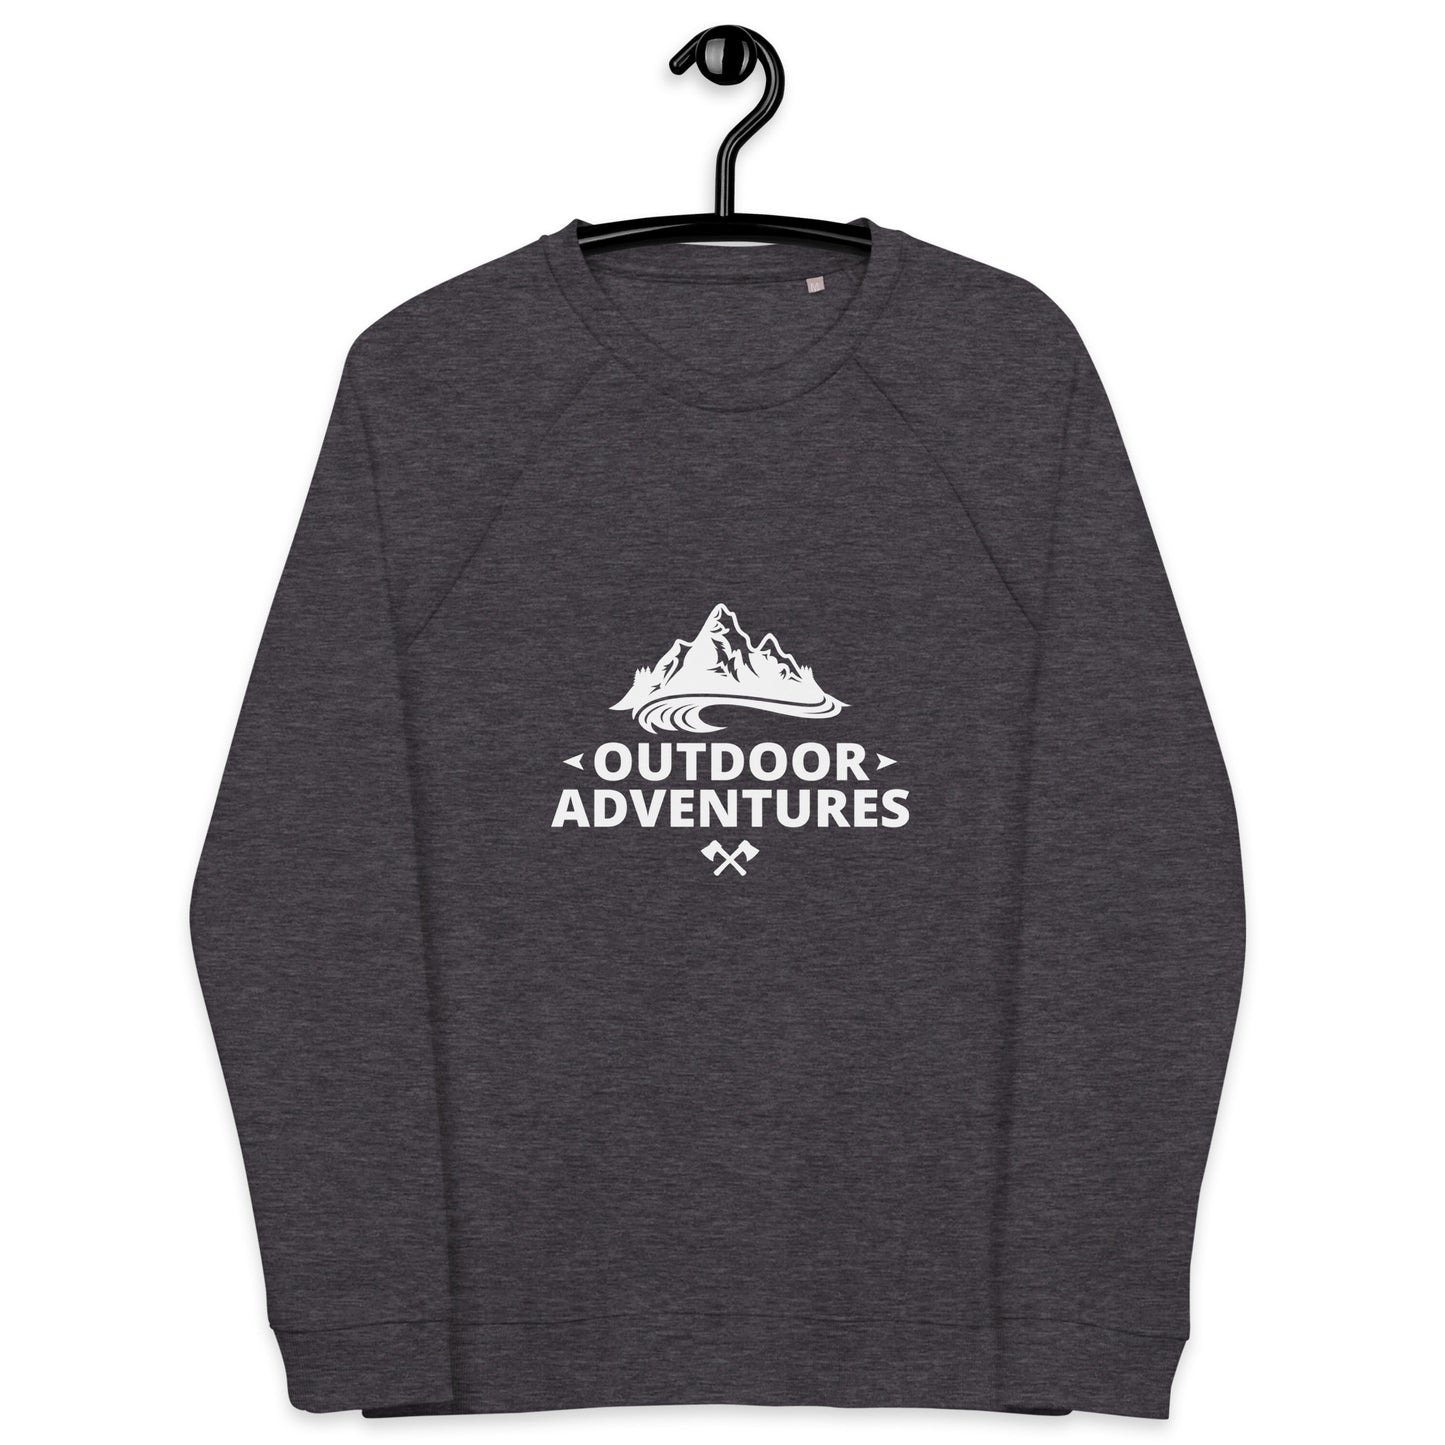 Outdoor Adventures - Unisex organic raglan sweatshirt - HobbyMeFree